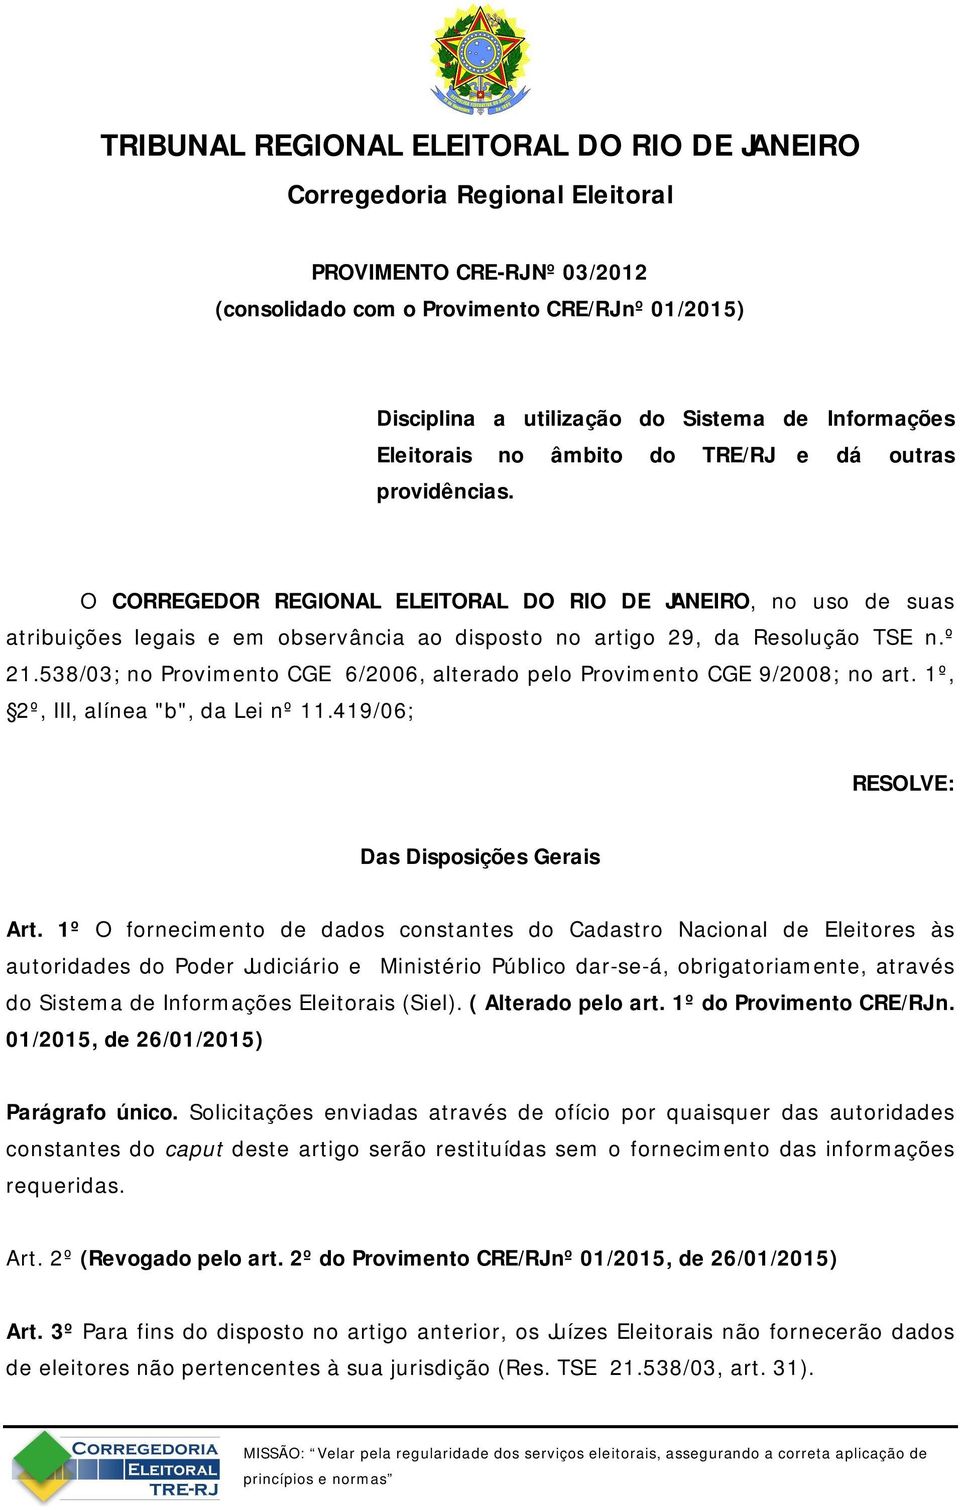 O CORREGEDOR REGIONAL ELEITORAL DO RIO DE JANEIRO, no uso de suas atribuições legais e em observância ao disposto no artigo 29, da Resolução TSE n.º 21.